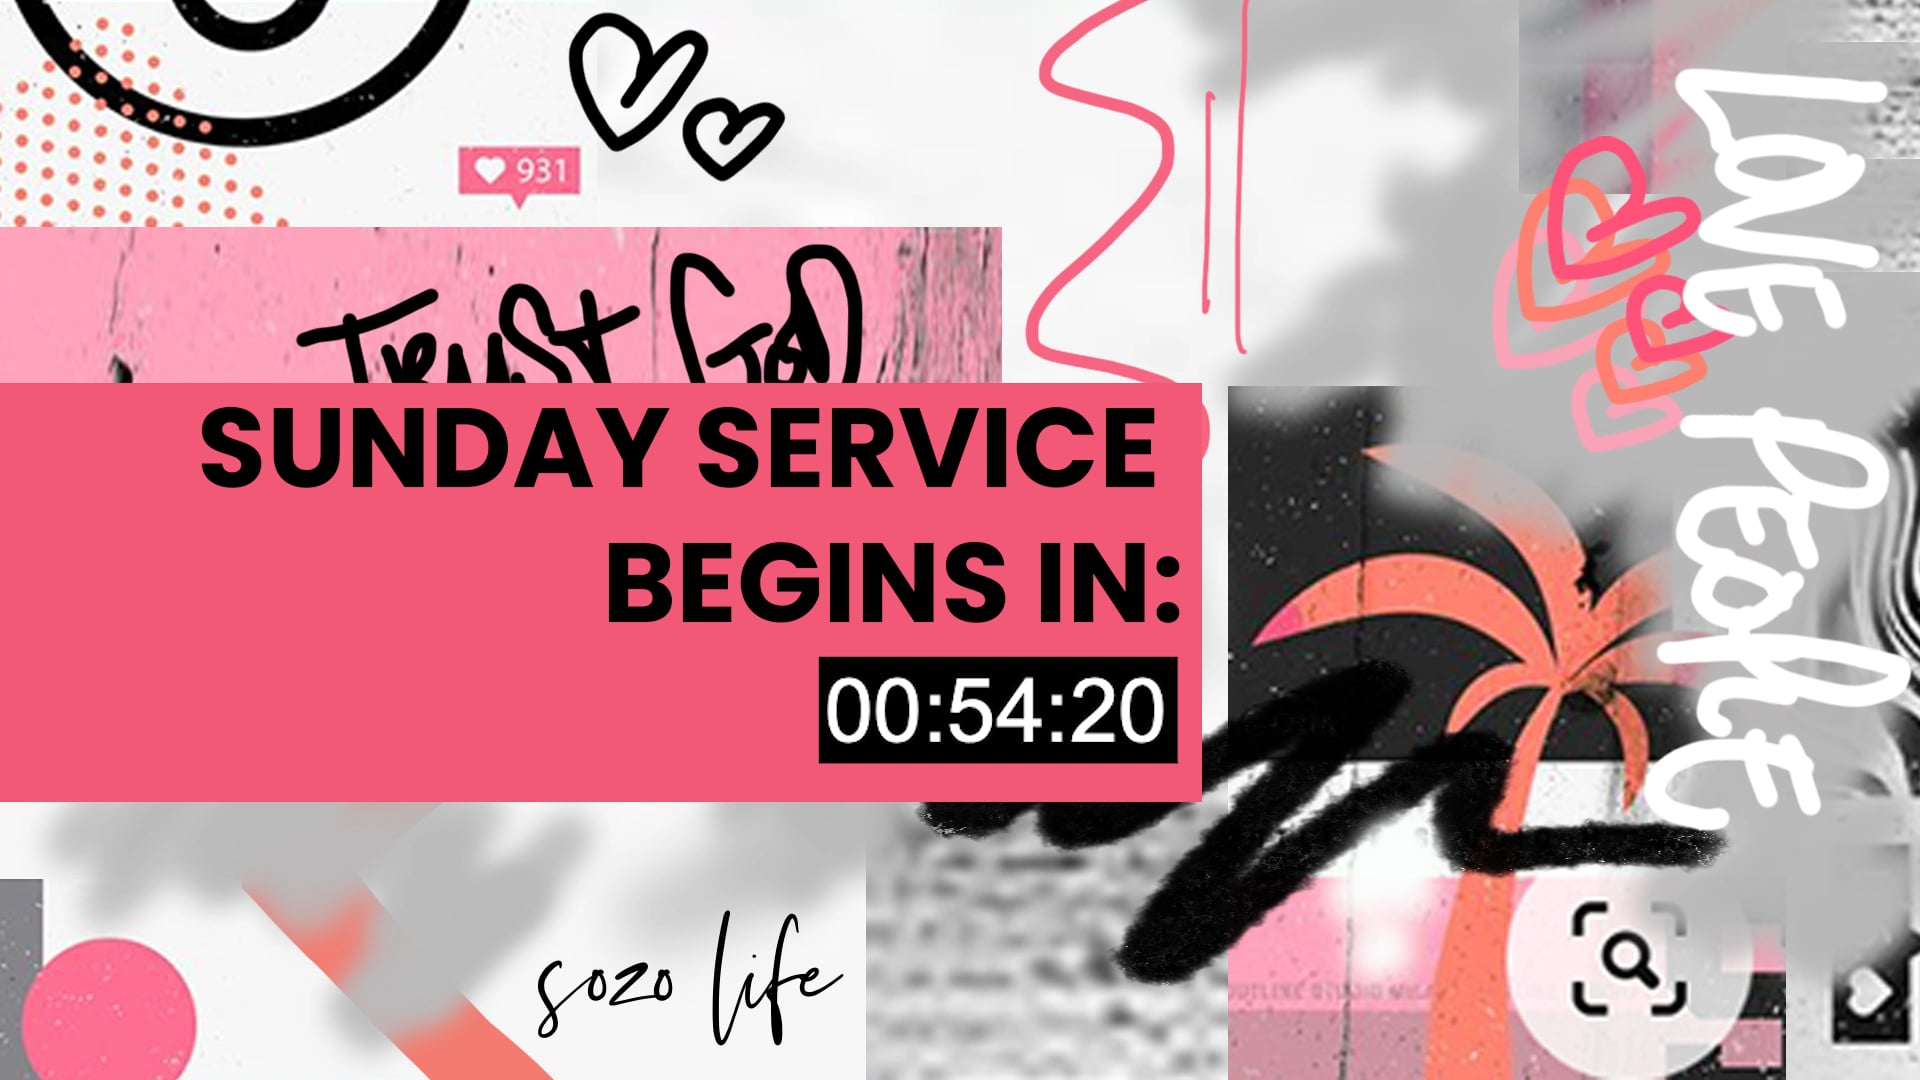 SOZO LIFE - Sunday Service 18.07.2021.mp4